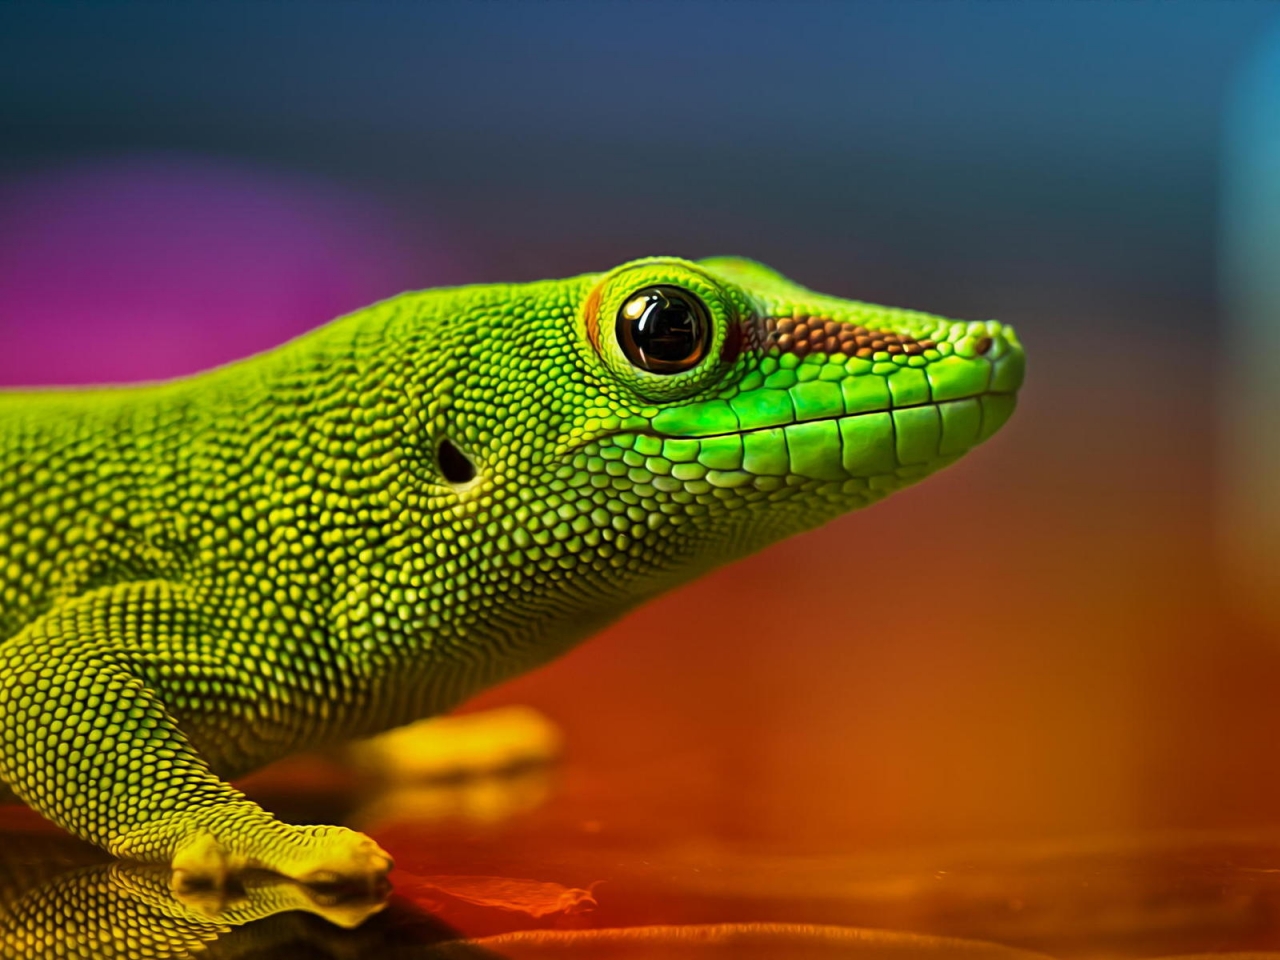 Green Lizard for 1280 x 960 resolution